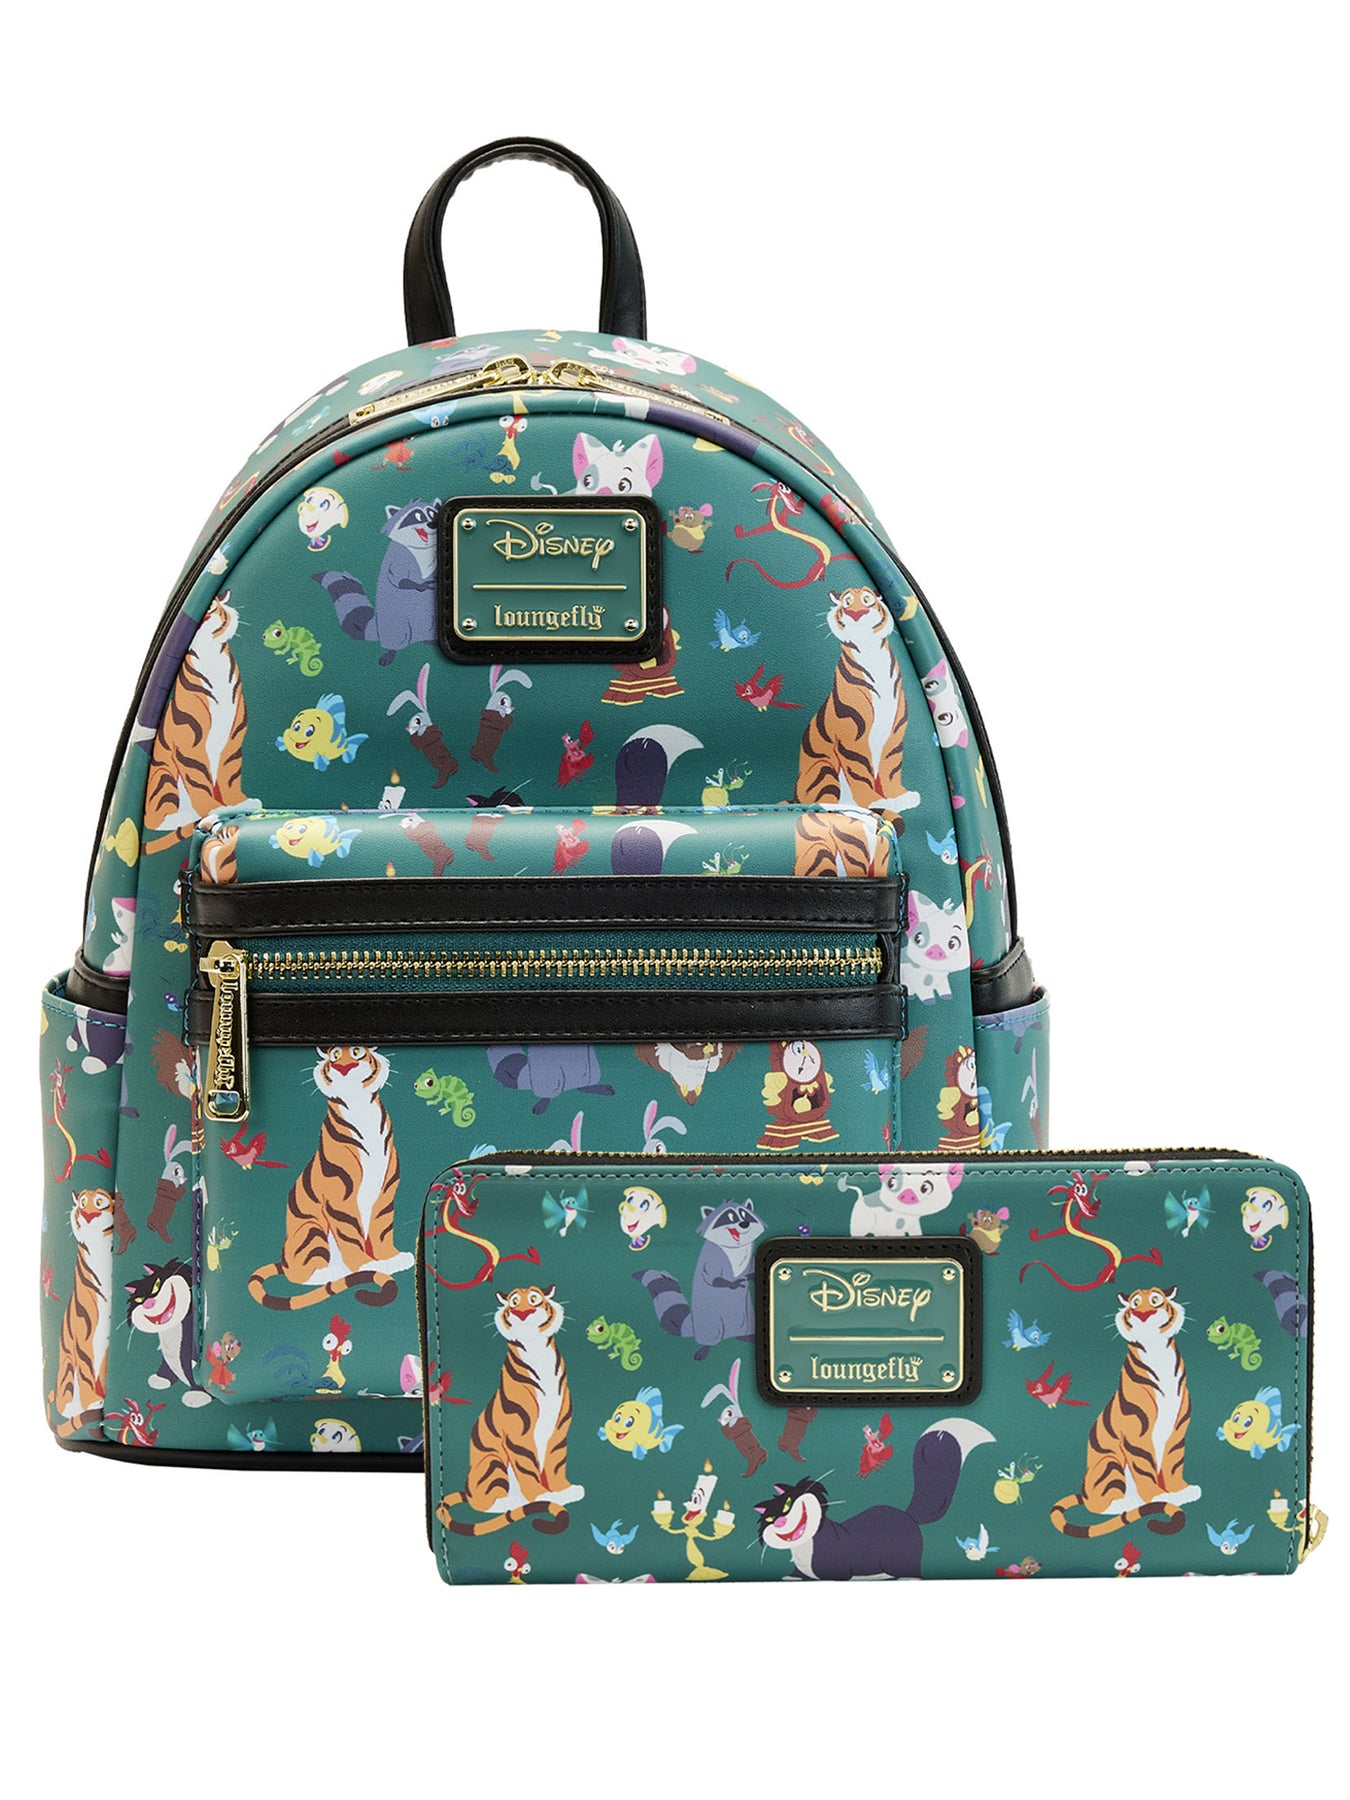 Disney Princesses Handbag | Disney bag, Disney handbags, Disney princess  bags